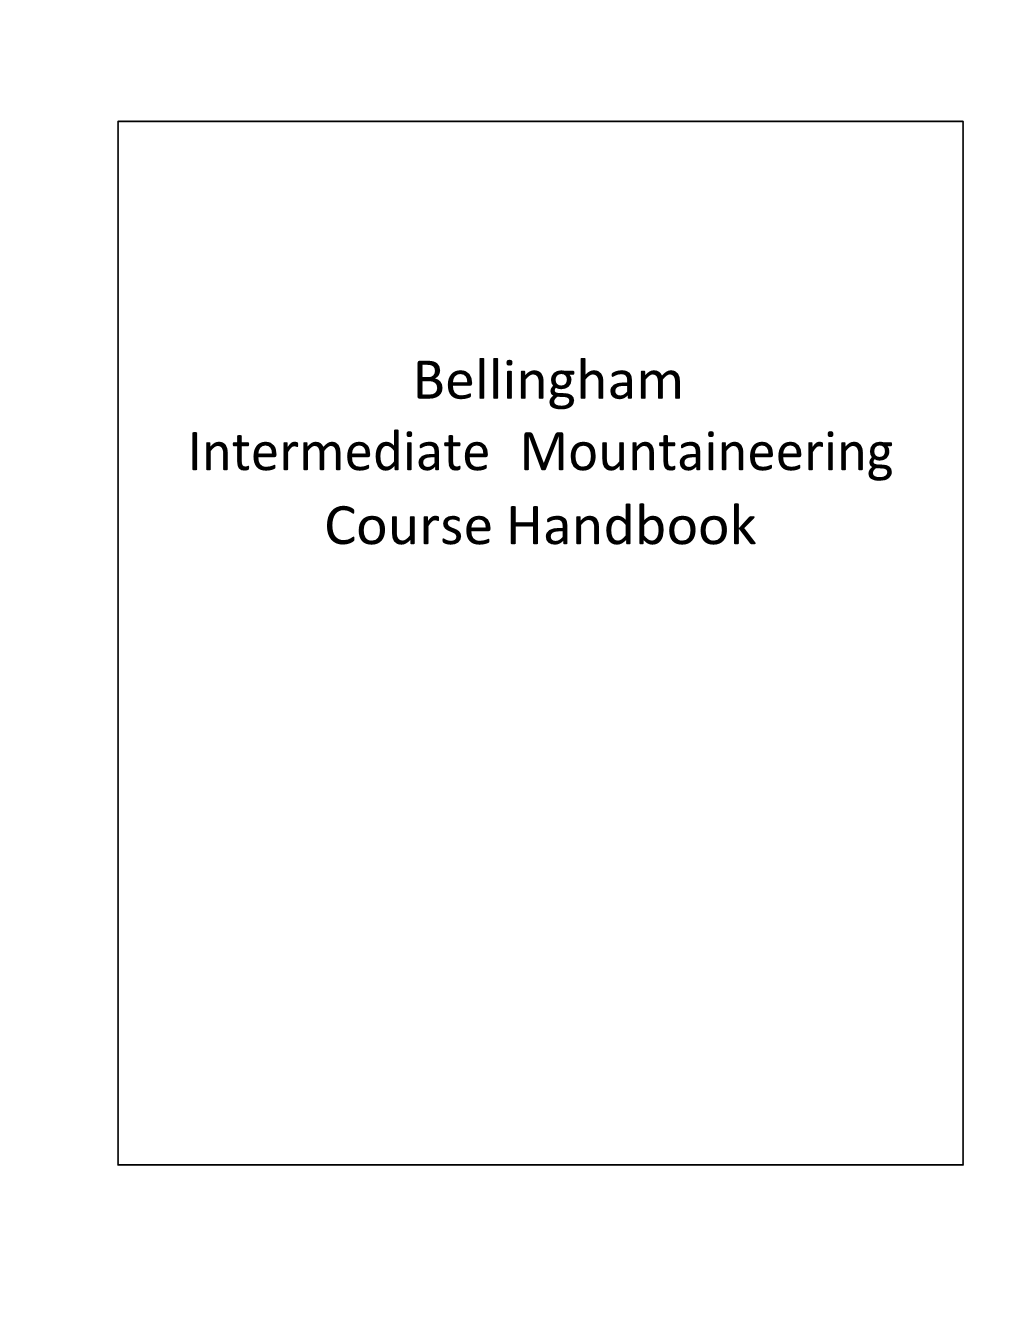 2014 Bellingham ICC Student Manual